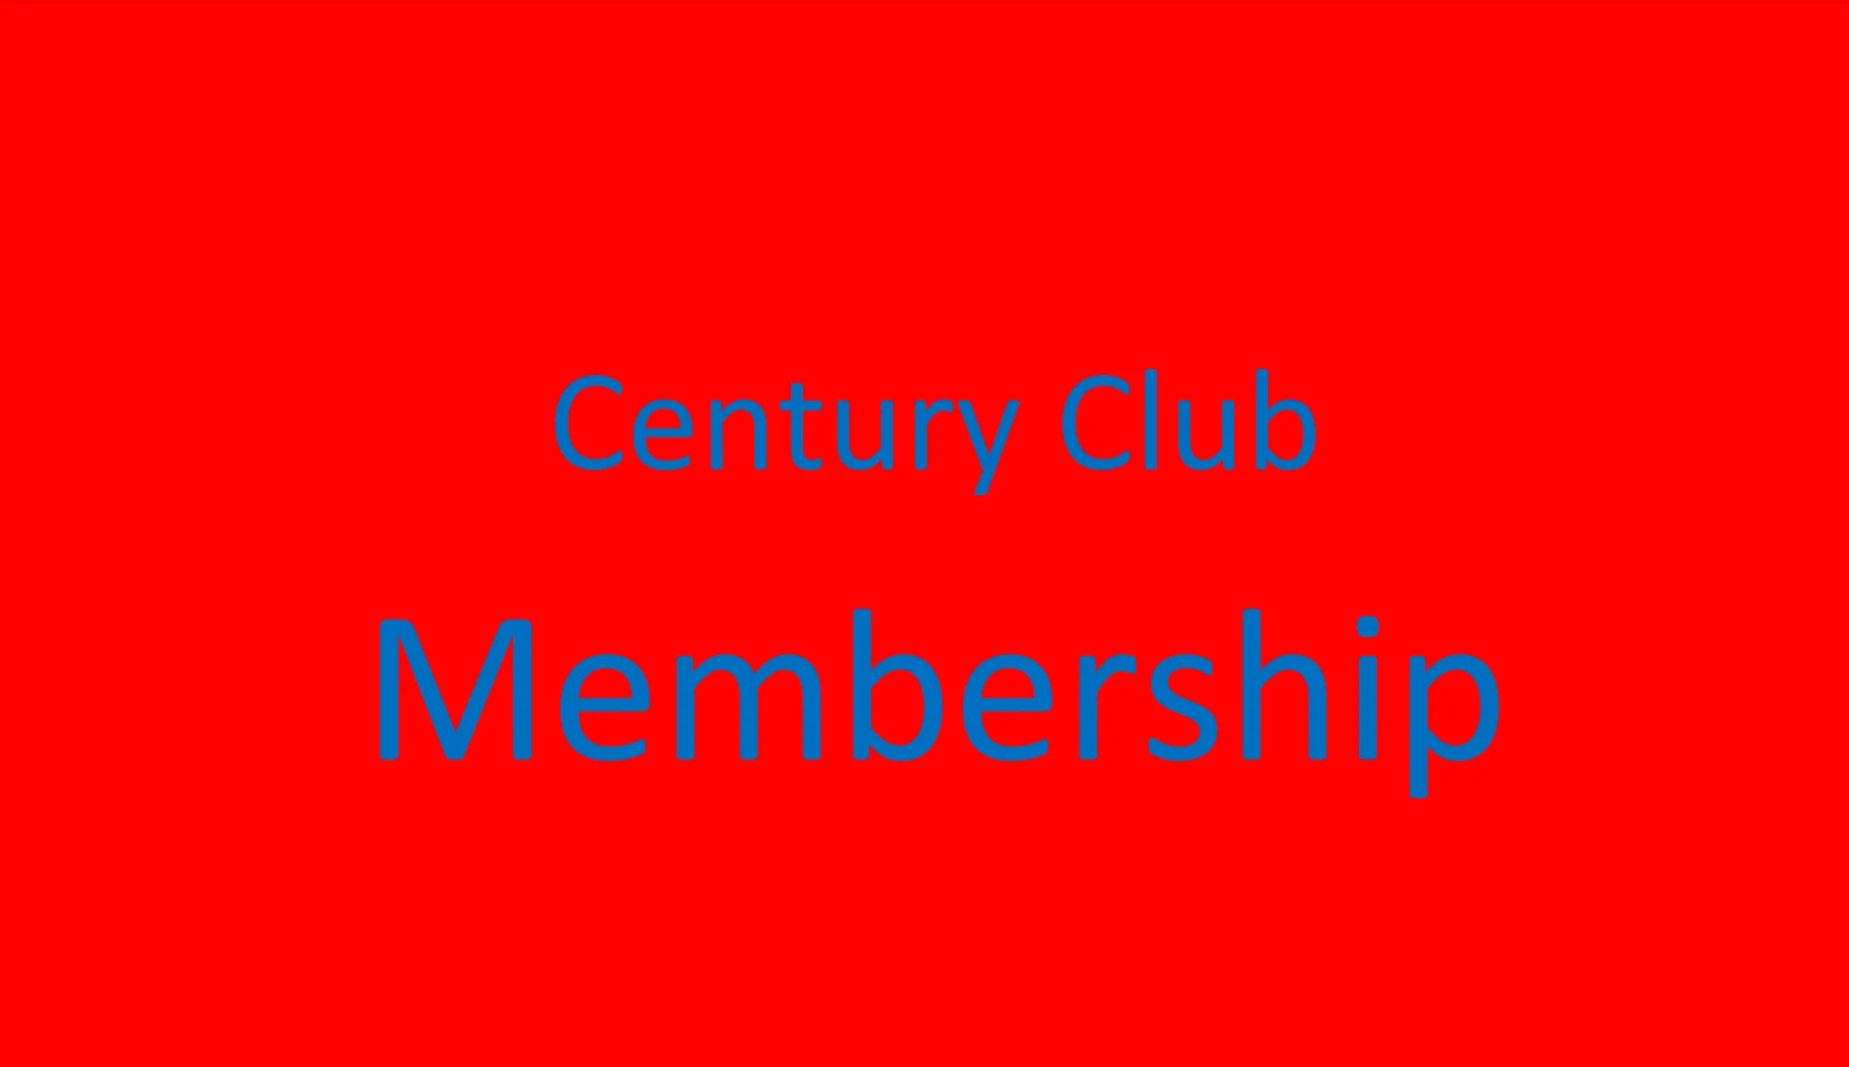 Century Club Membership